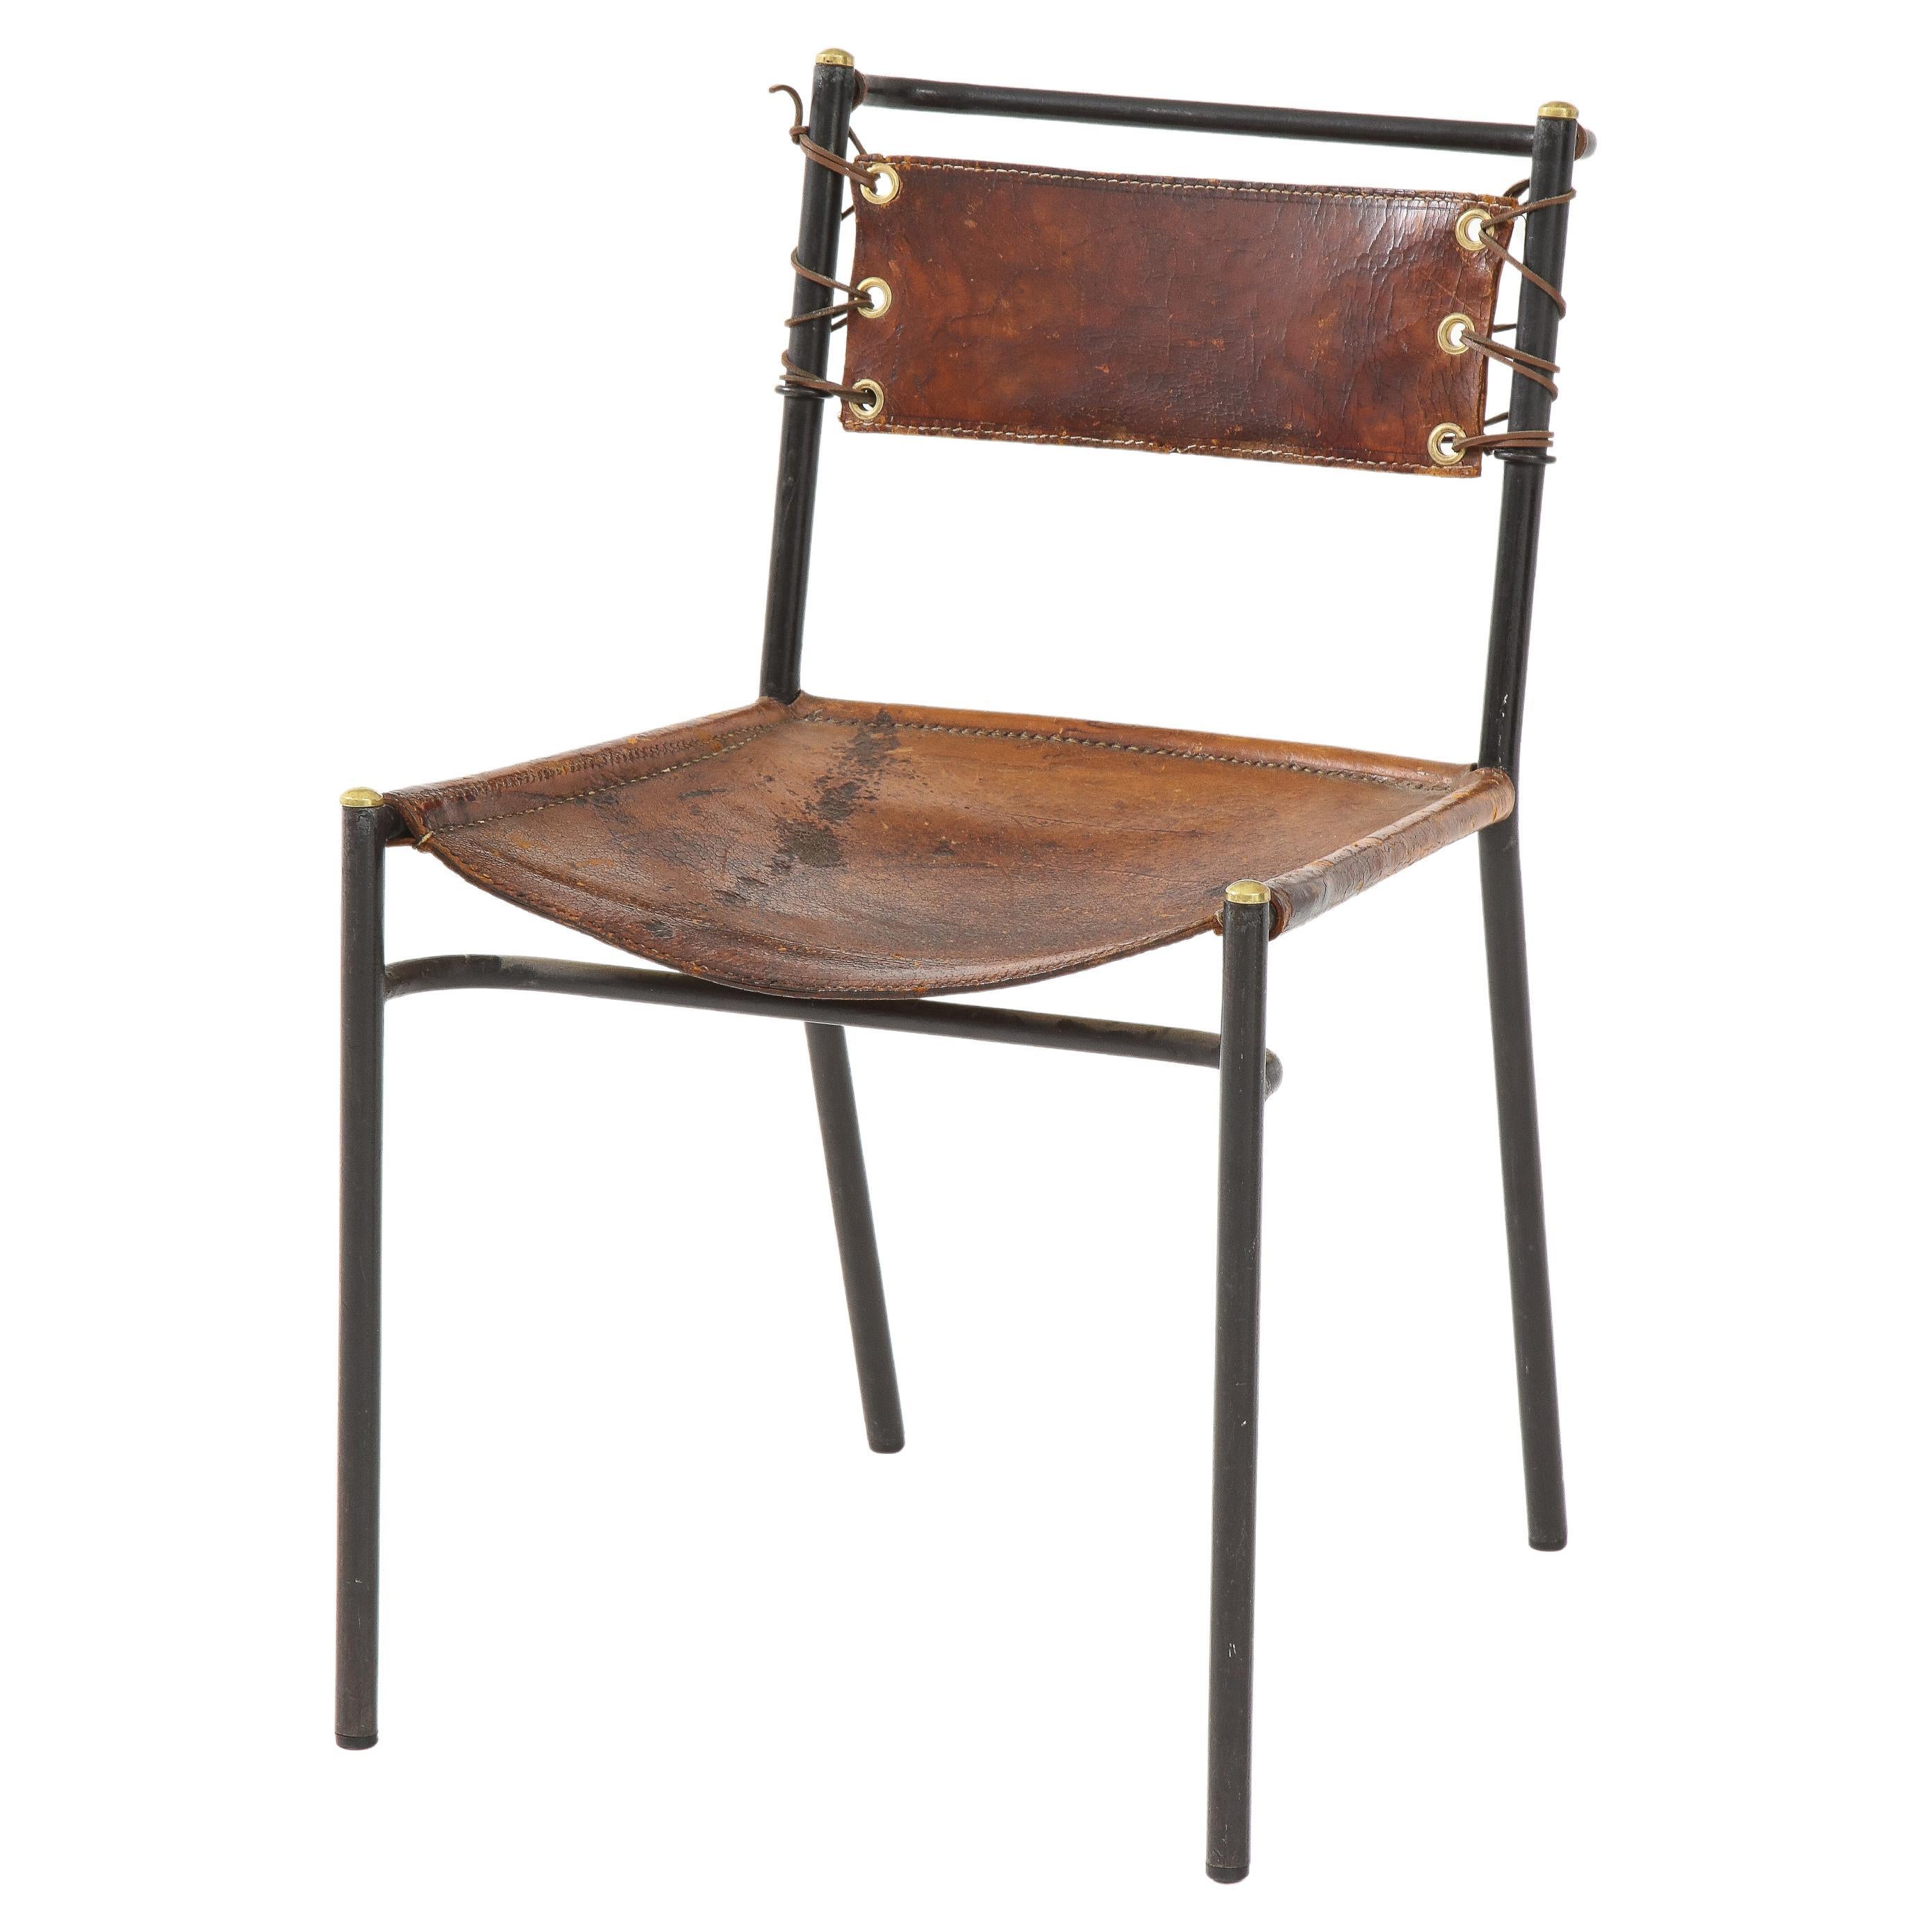 Beistellstuhl aus Leder und Metall im Stil von Jacques Adnet, Frankreich, ca. 1950er Jahre